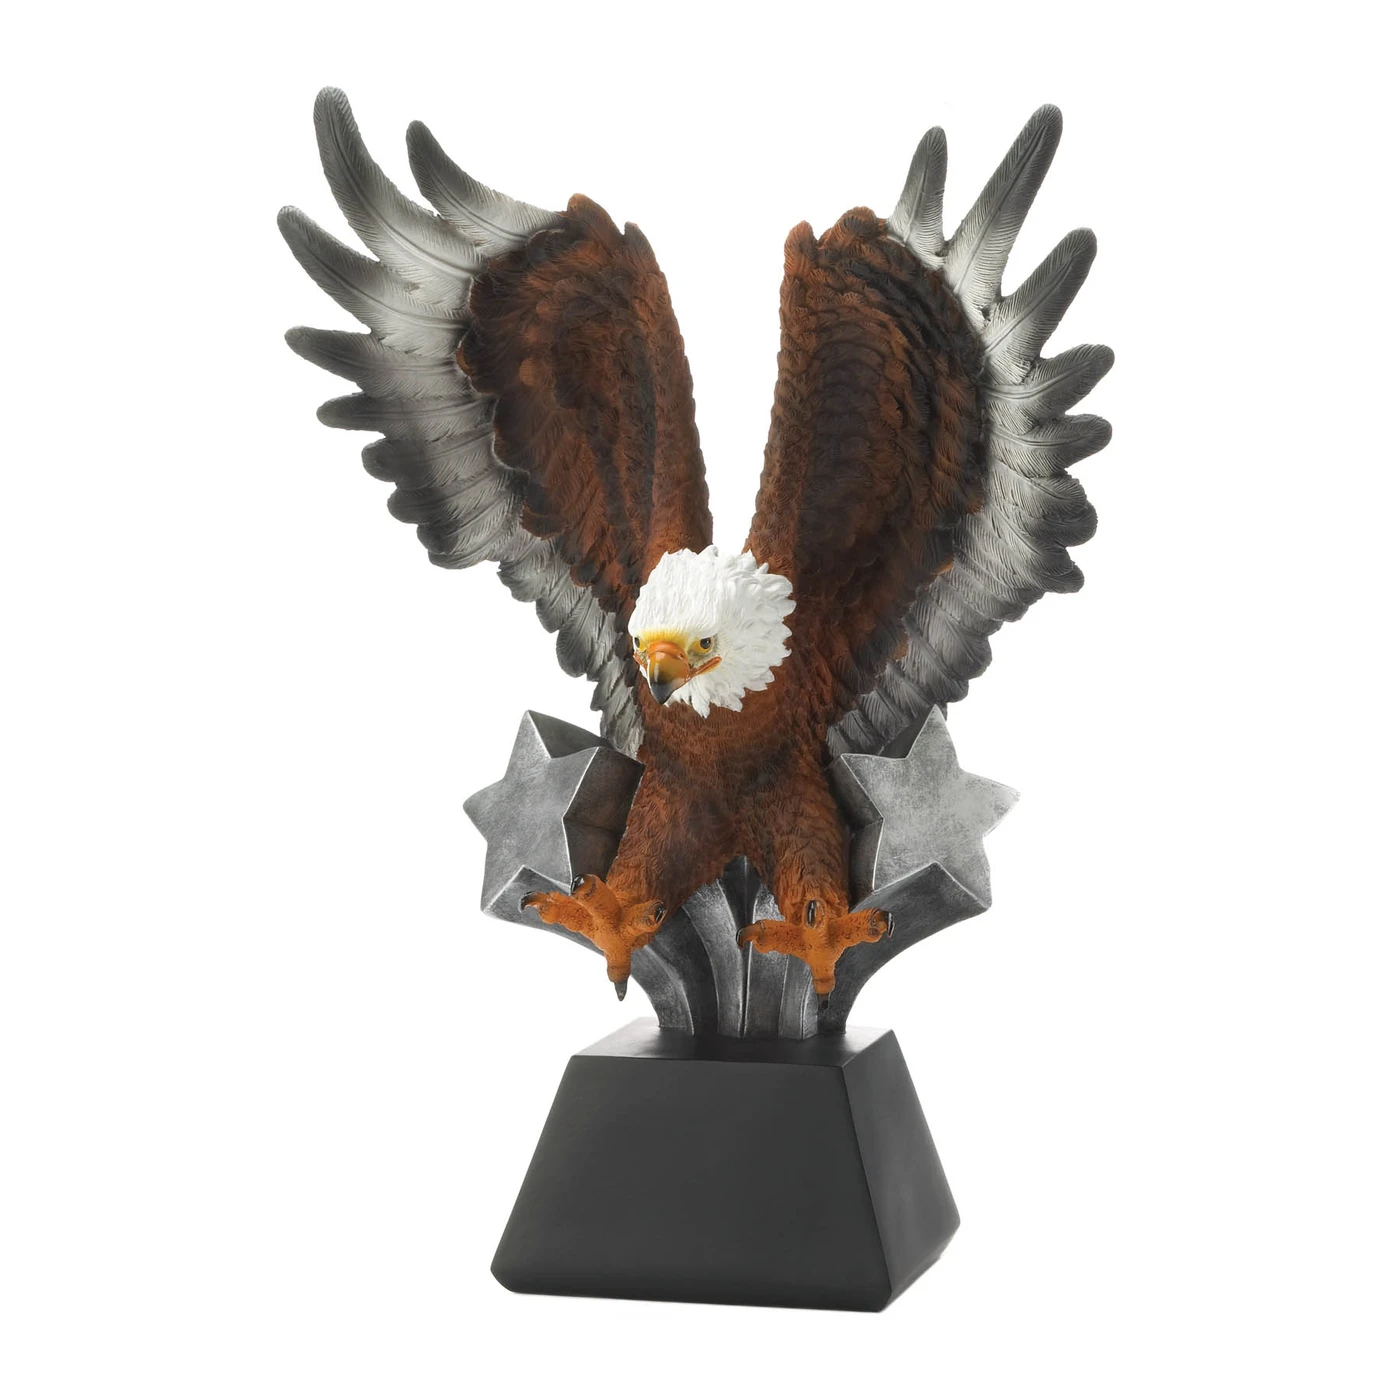 Eagle - $91.37